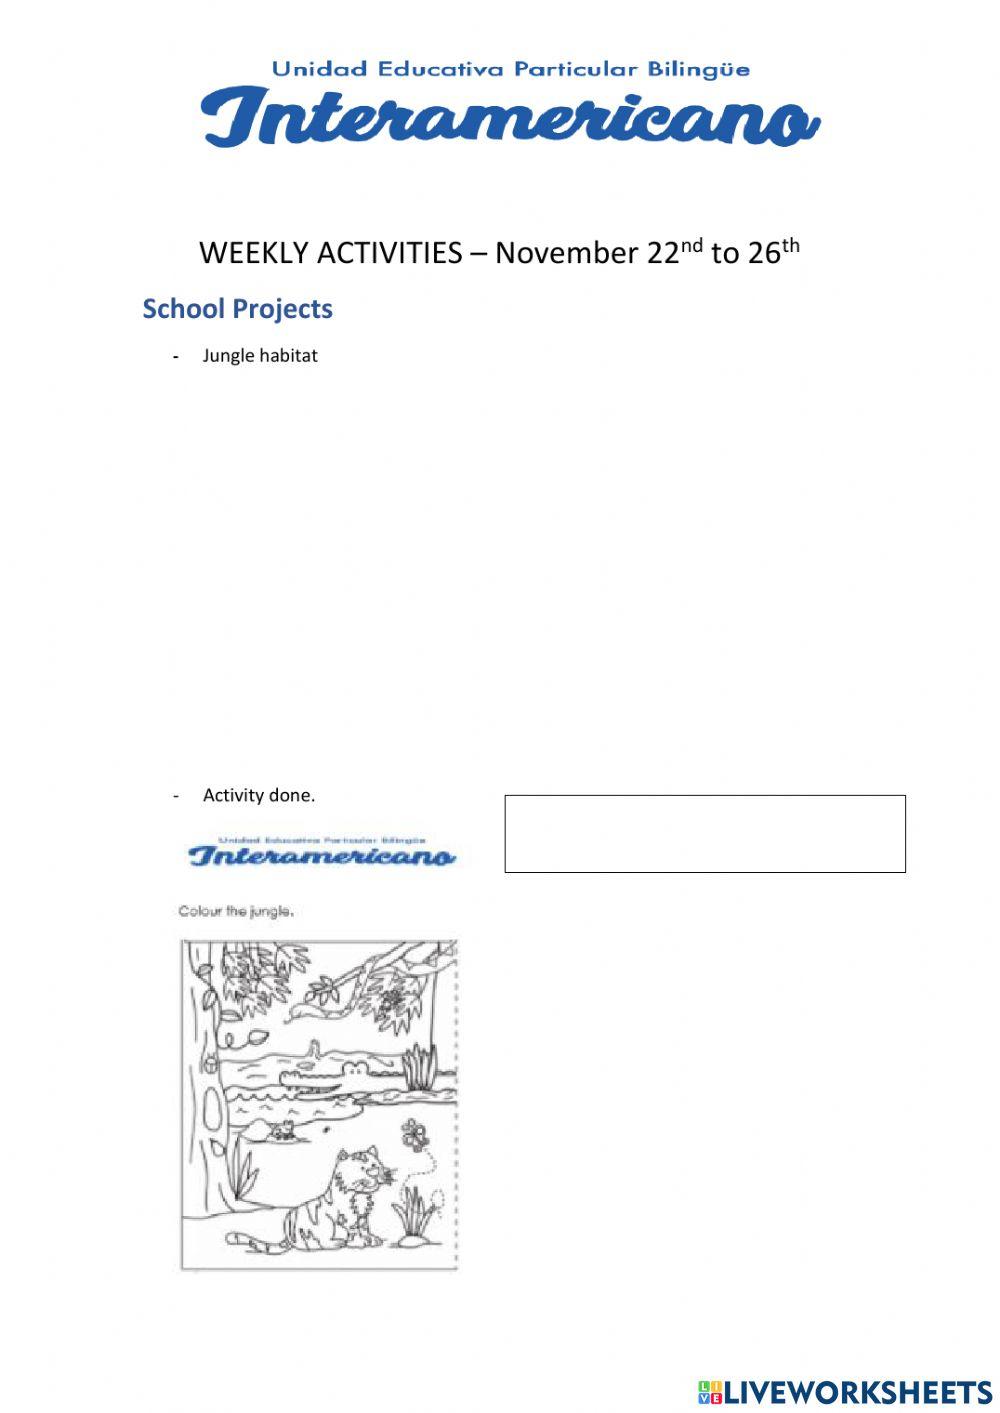 Weekly activities 29